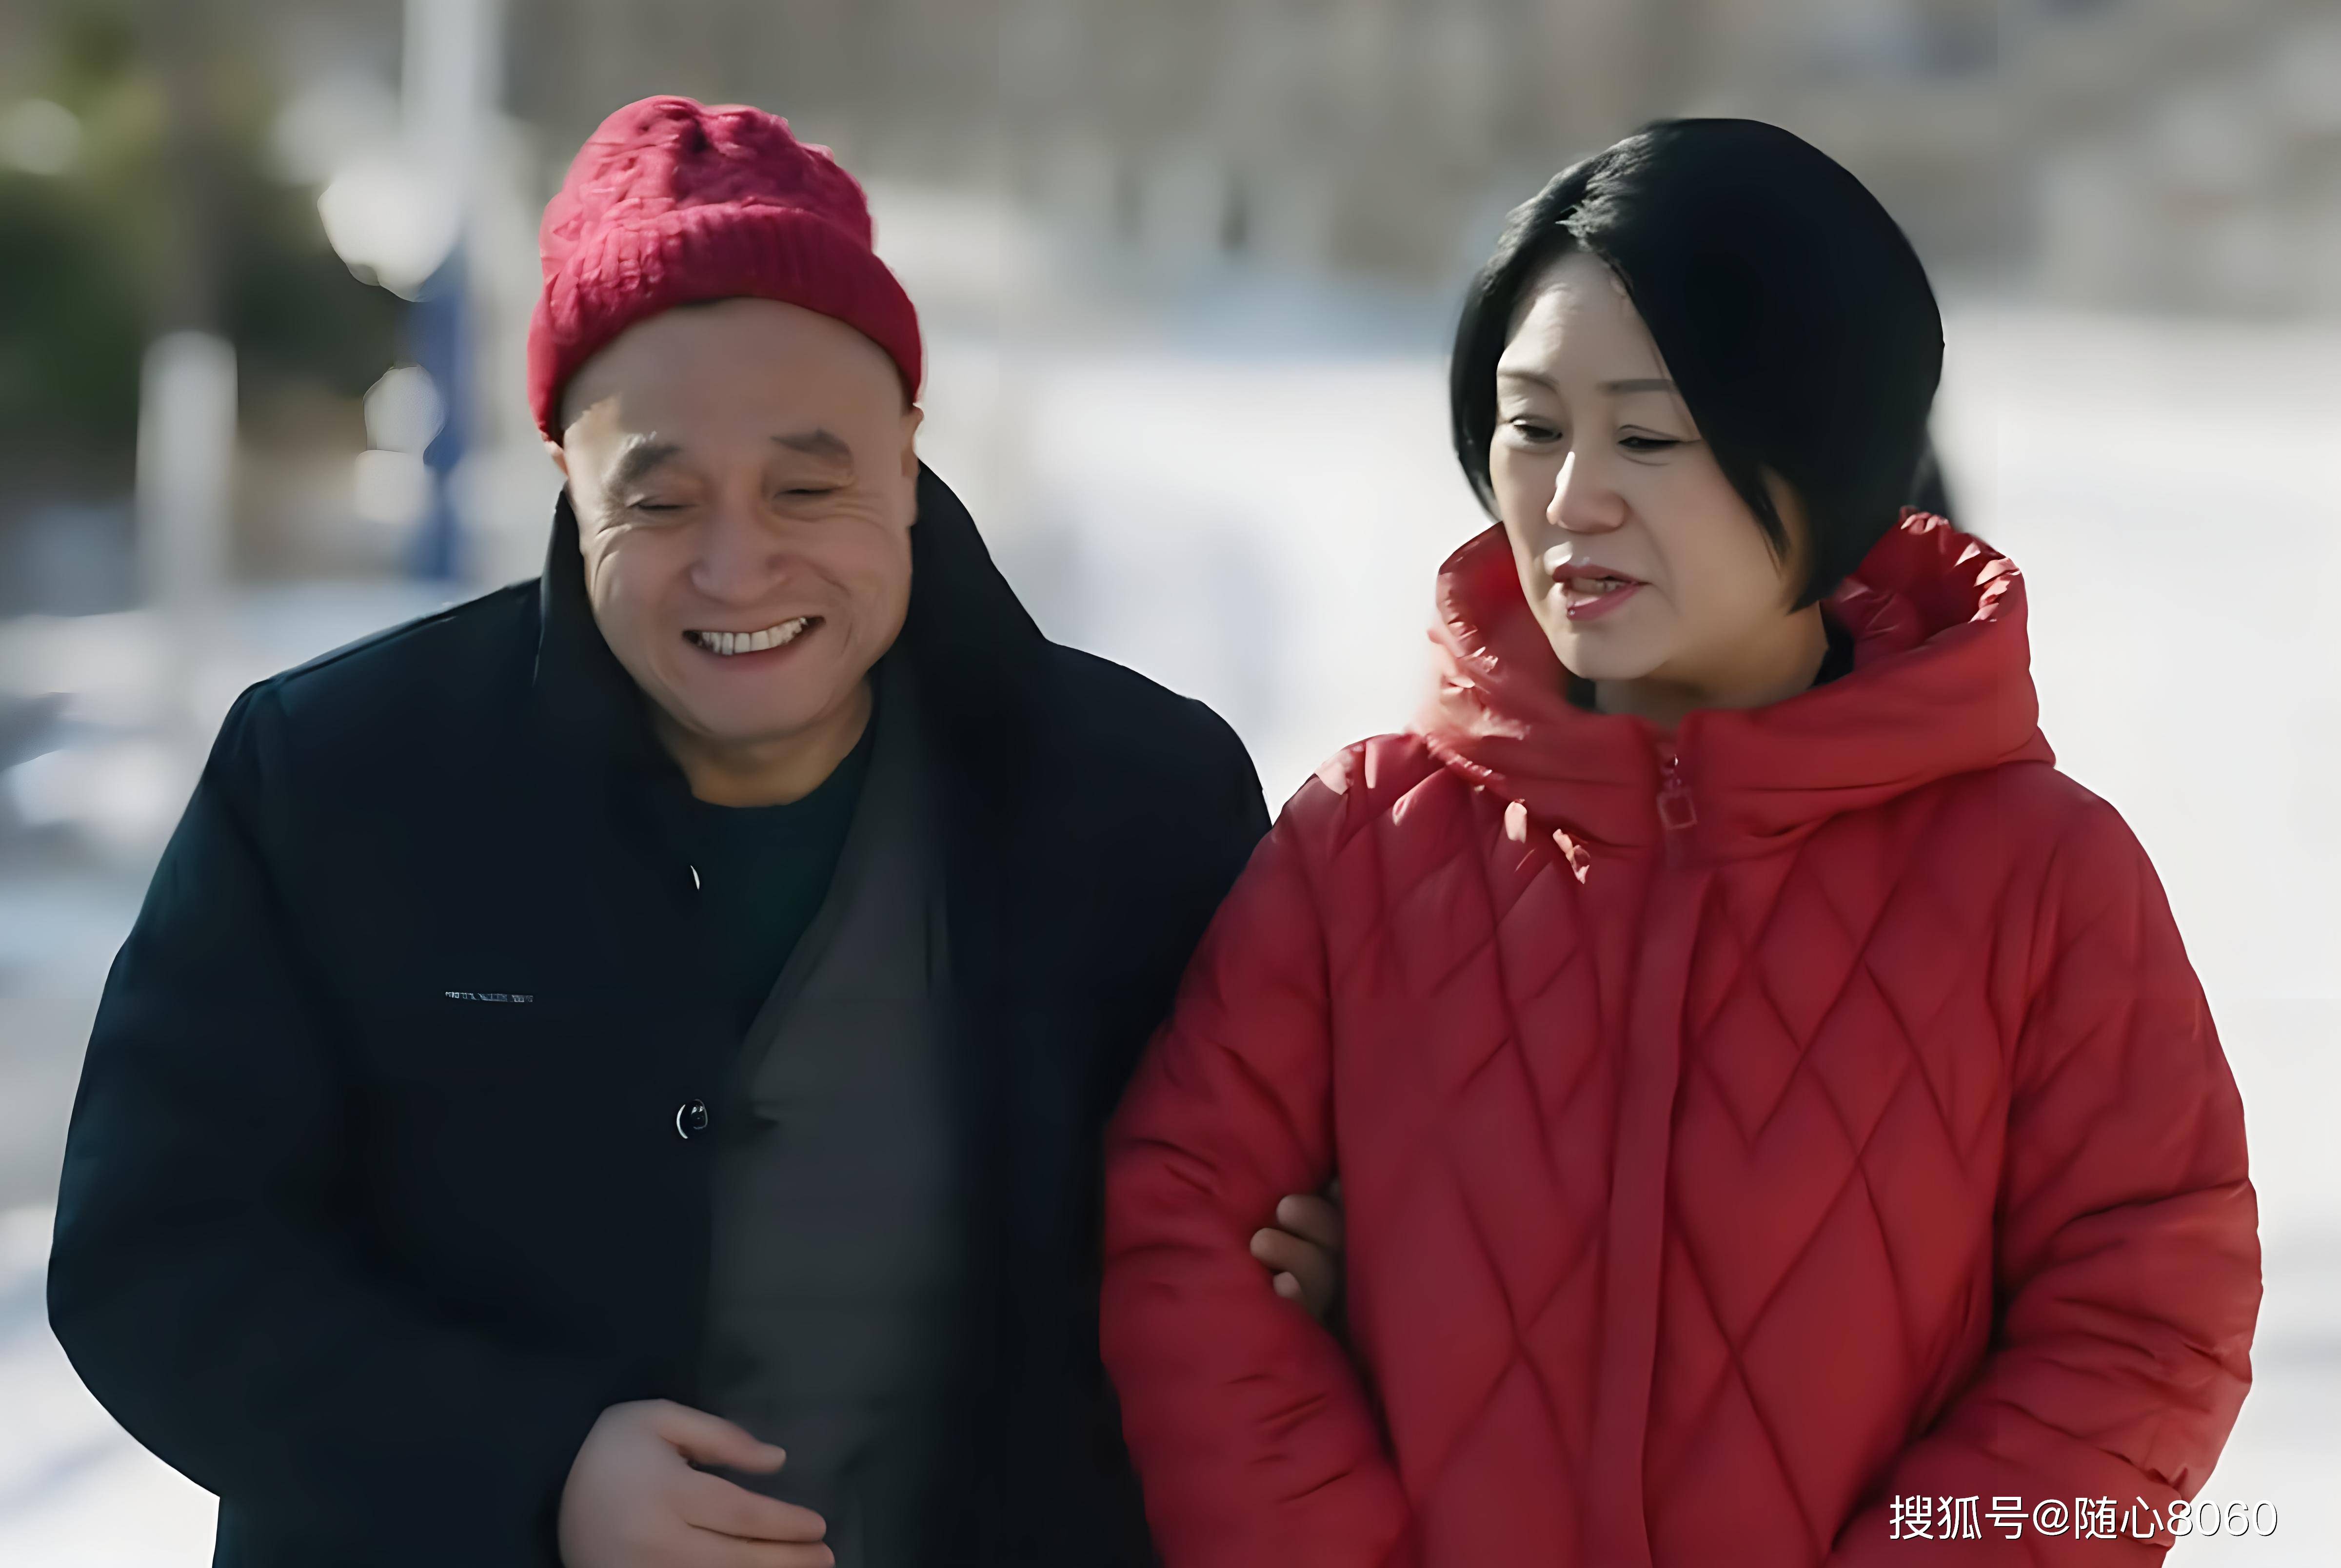 赵本山的《乡村爱情》更新到第16季,到底哪些人爱看?网友发问